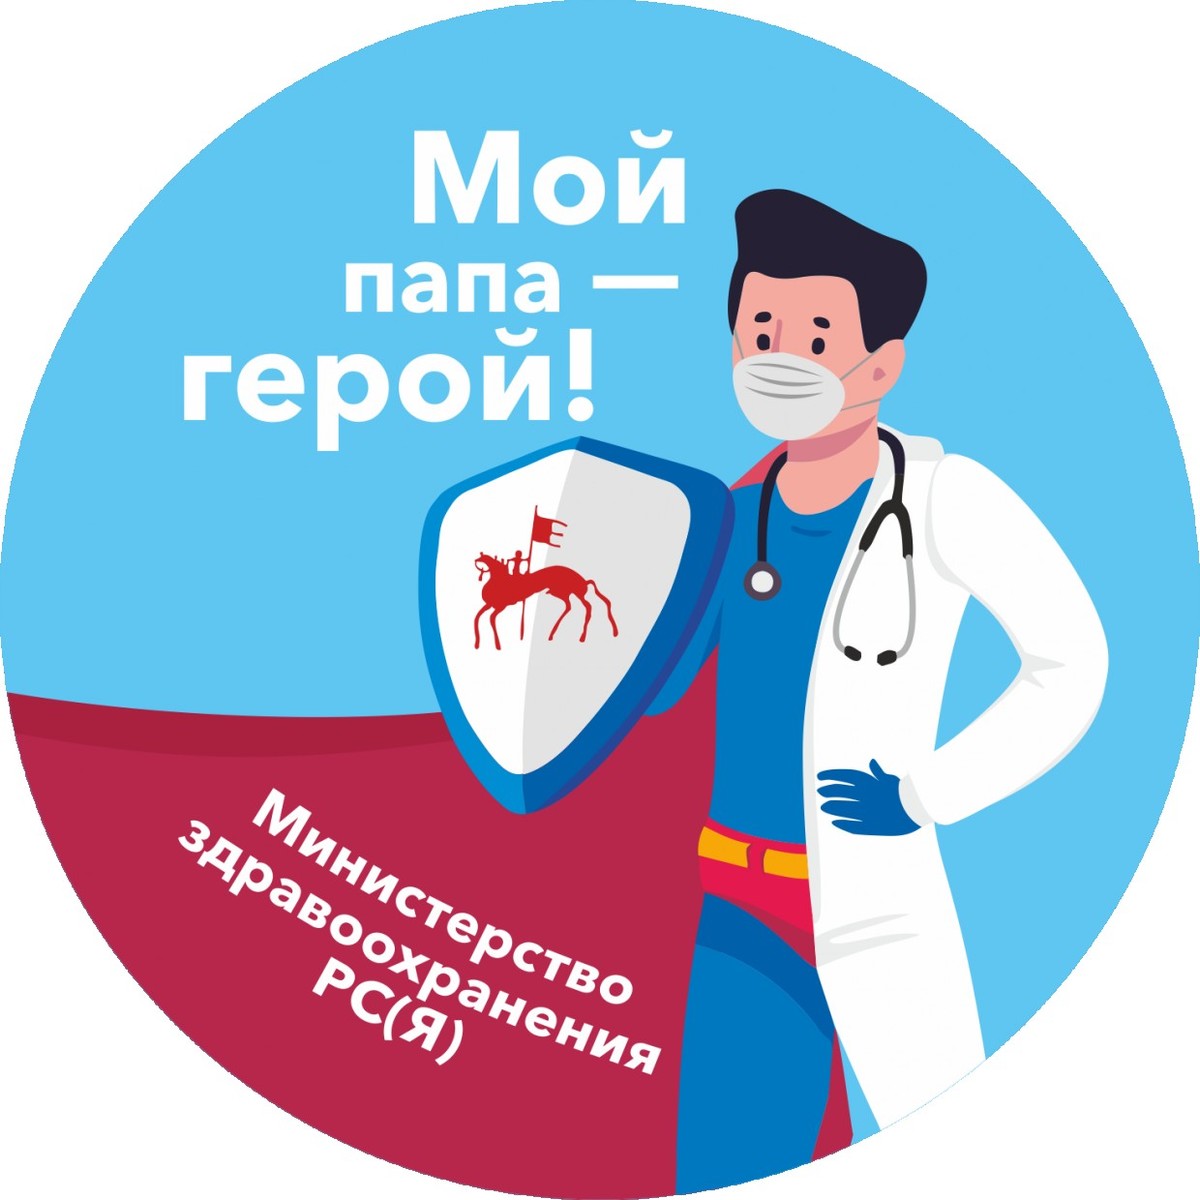 "Твой родитель - Супергерой", - министр здравоохранения Якутии обратилась к детям медиков